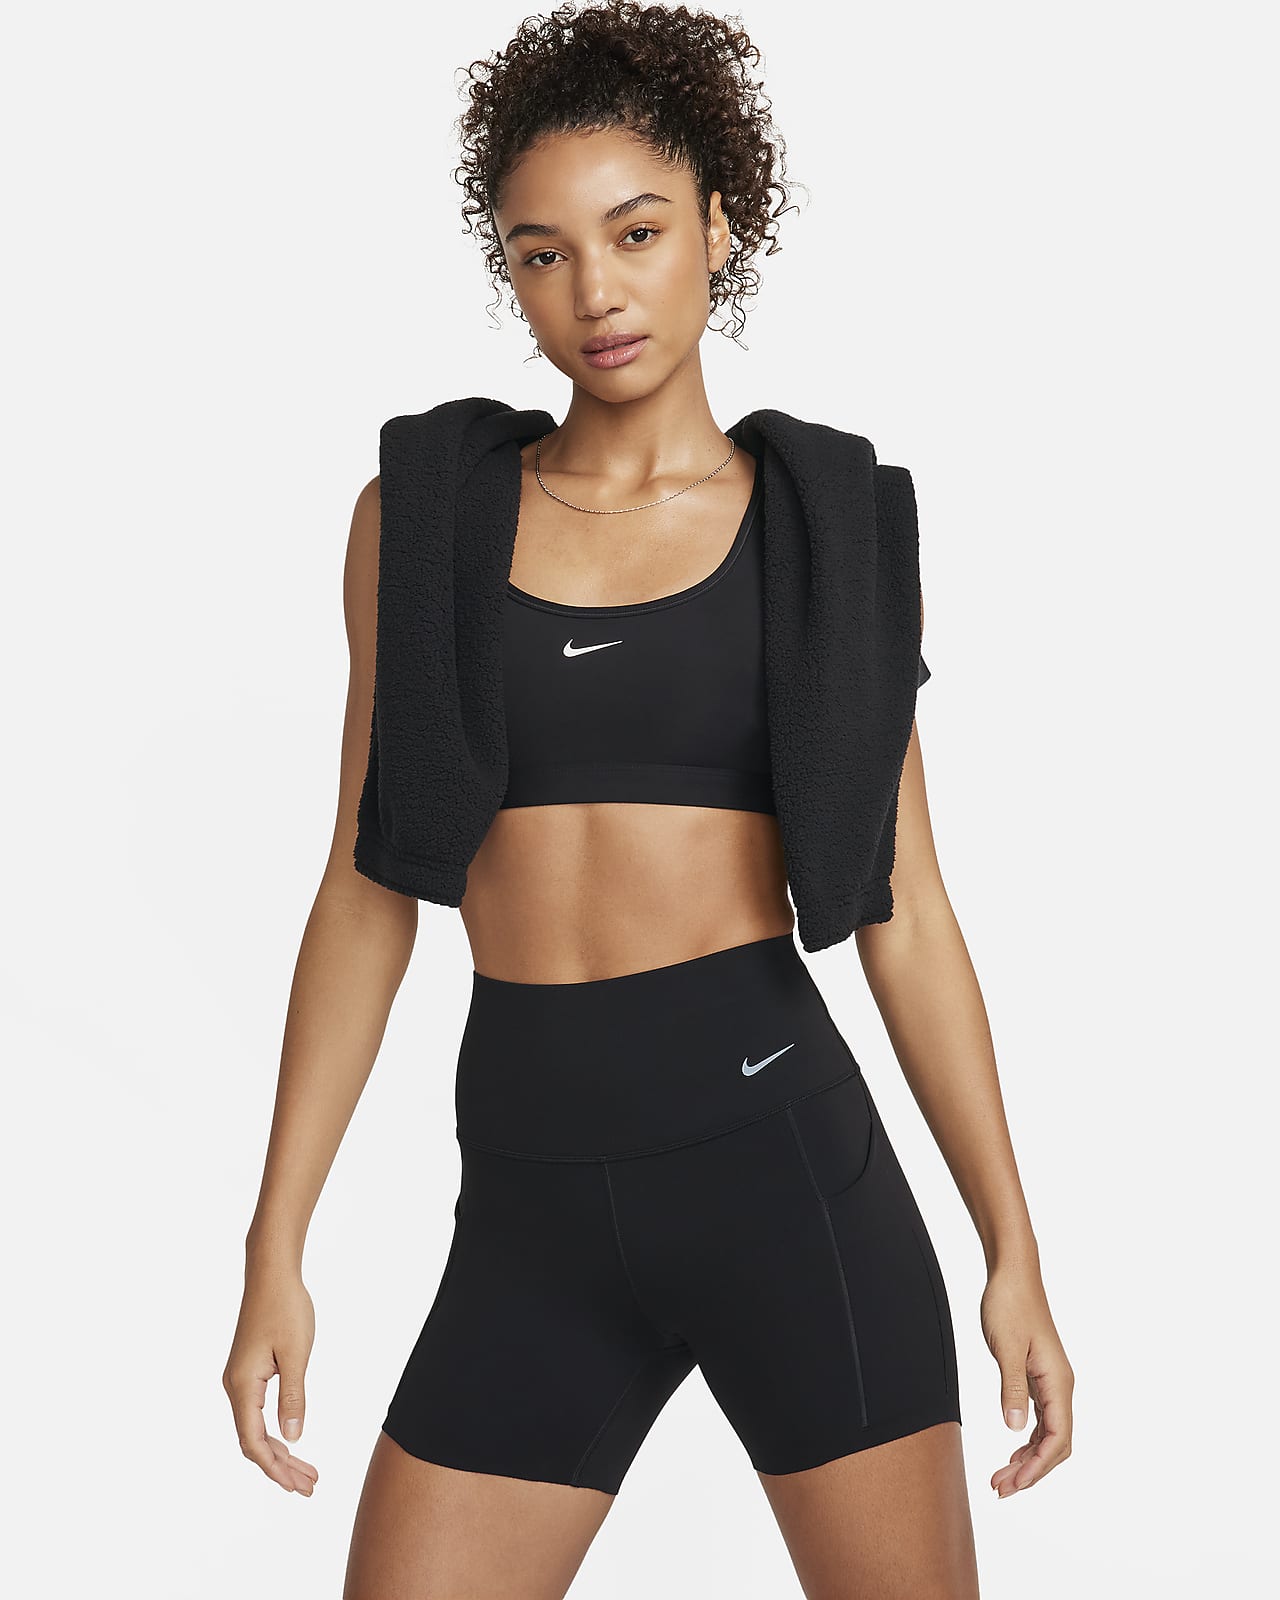 Nike Universa-cykelshorts (13 cm) med medium støtte, høj talje og lommer til kvinder